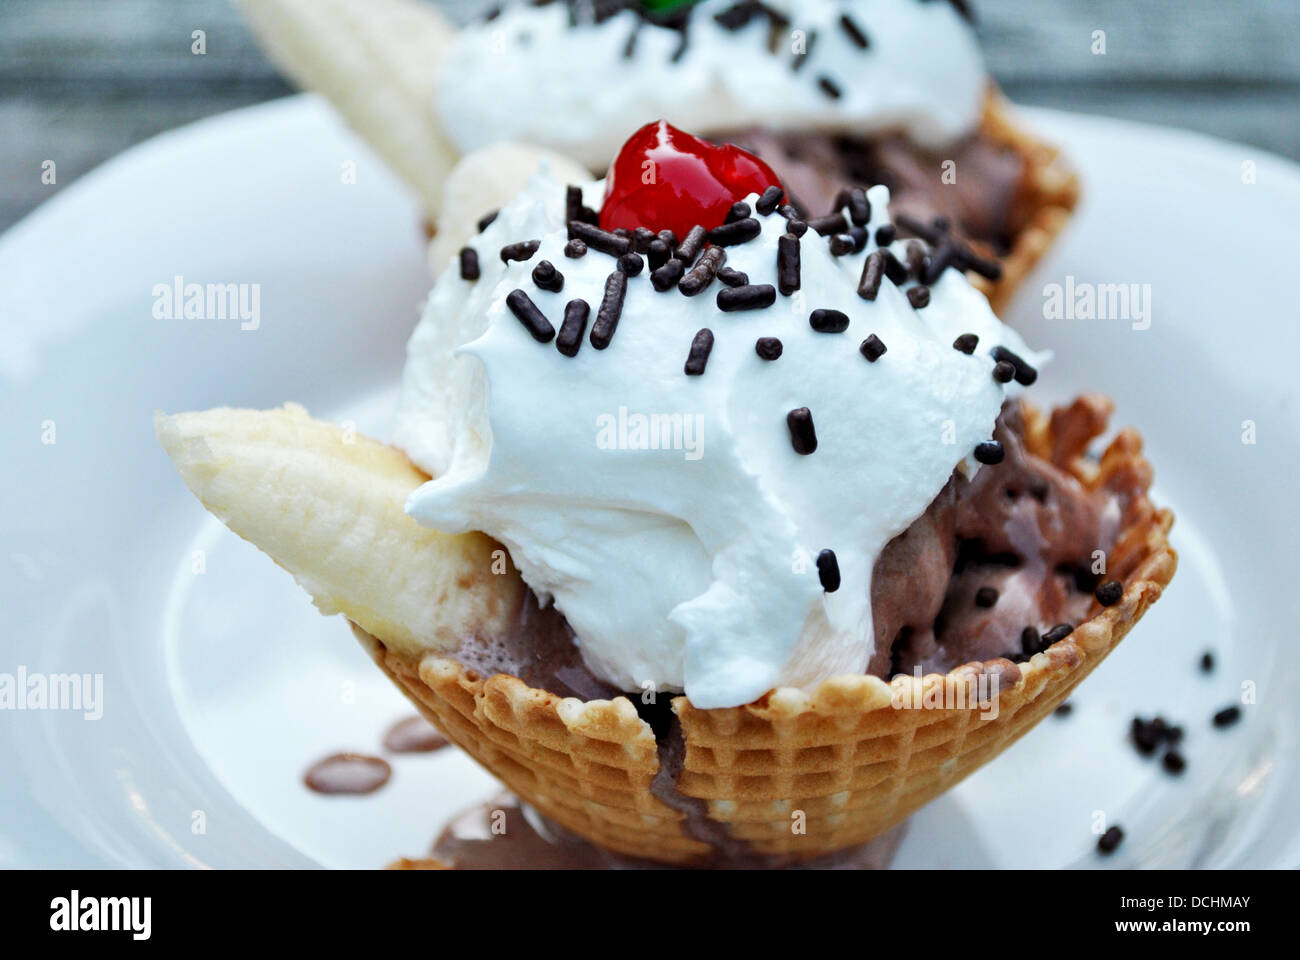 Dimanche de la crème glacée dans un cornet gaufré avec tasse brisures de chocolat & fruits Banque D'Images